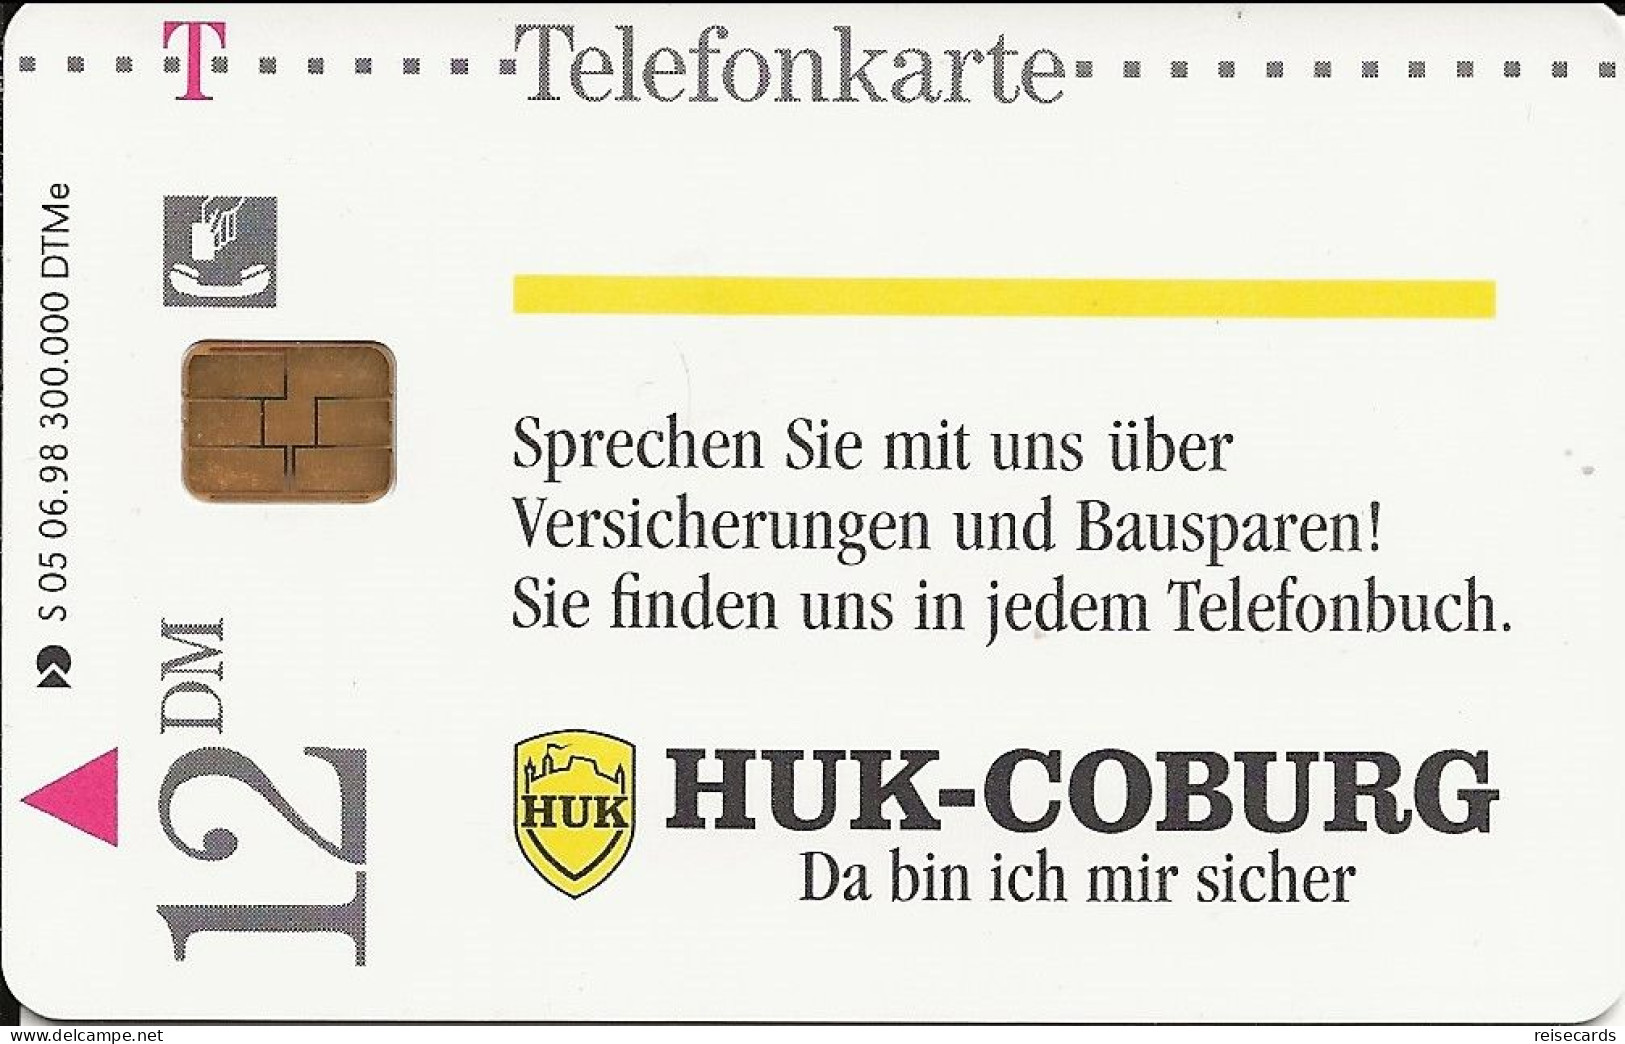 Germany: Telekom S 05 06.98 Huk-Coburg Versicherungen - S-Series : Tills With Third Part Ads